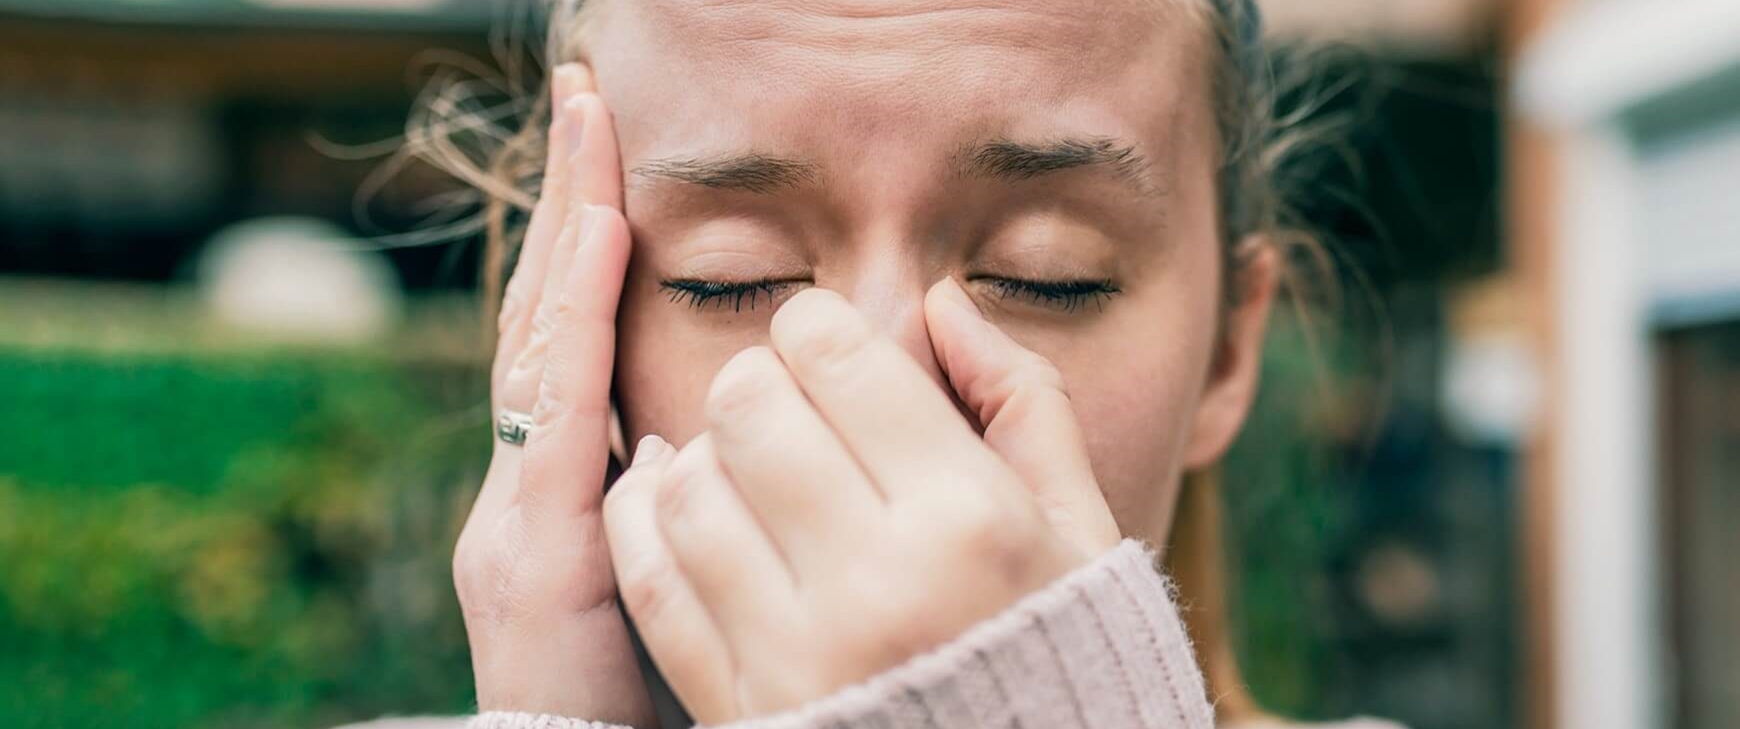 Inflammation des sinus nasaux, Sinusite